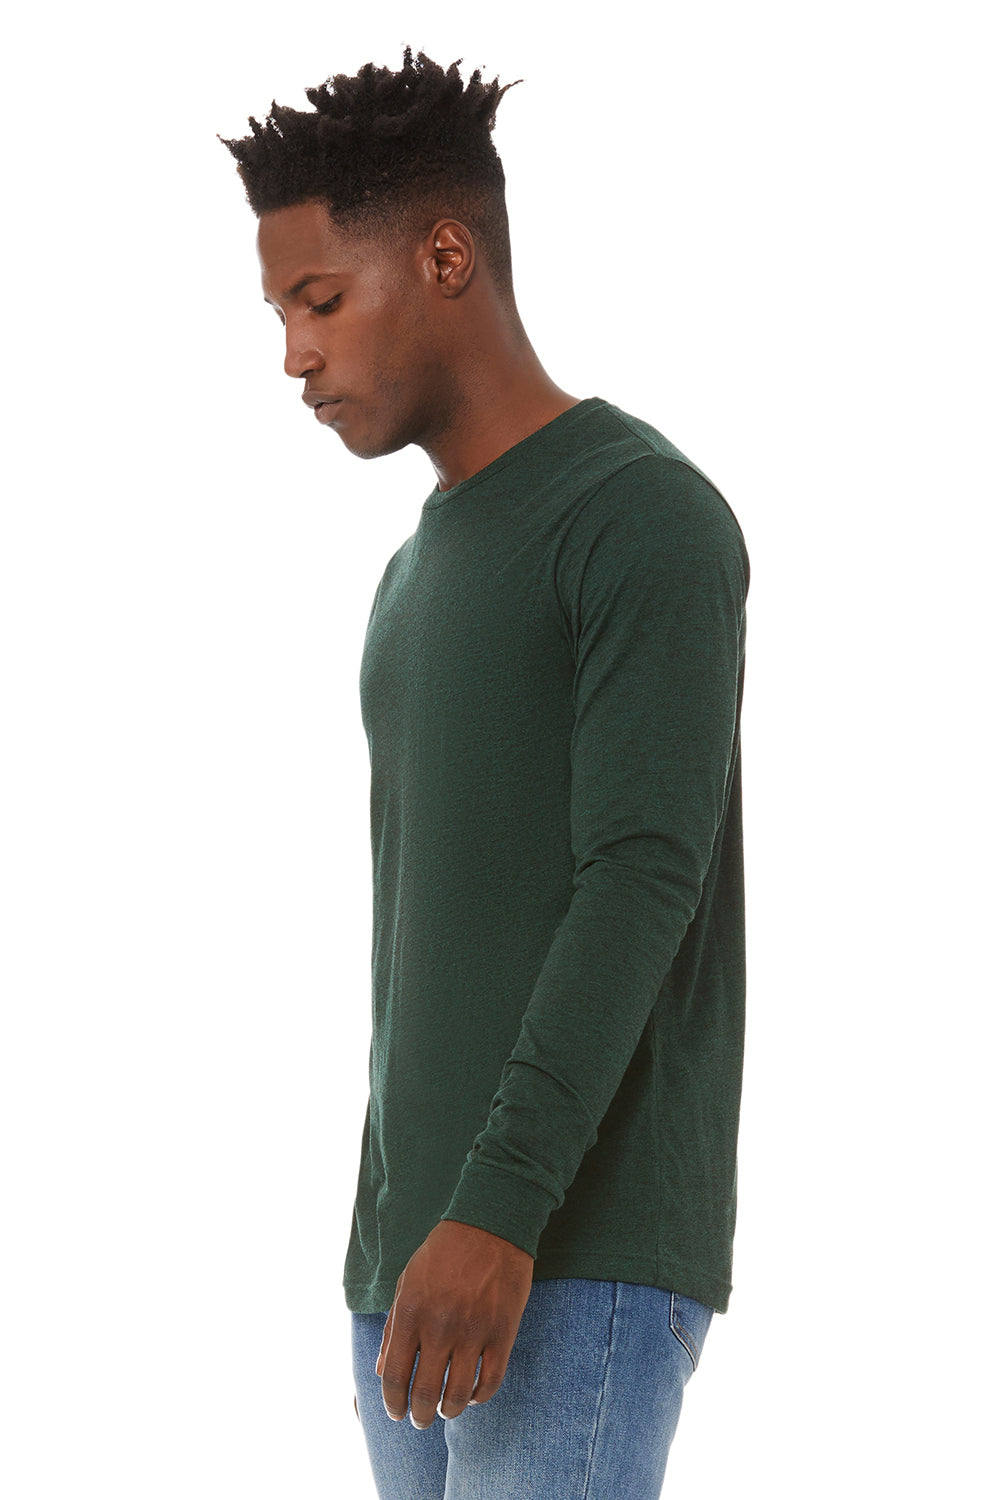 Bella + Canvas BC3513 Mens Long Sleeve Crewneck T-Shirt Emerald Green Model 3Q